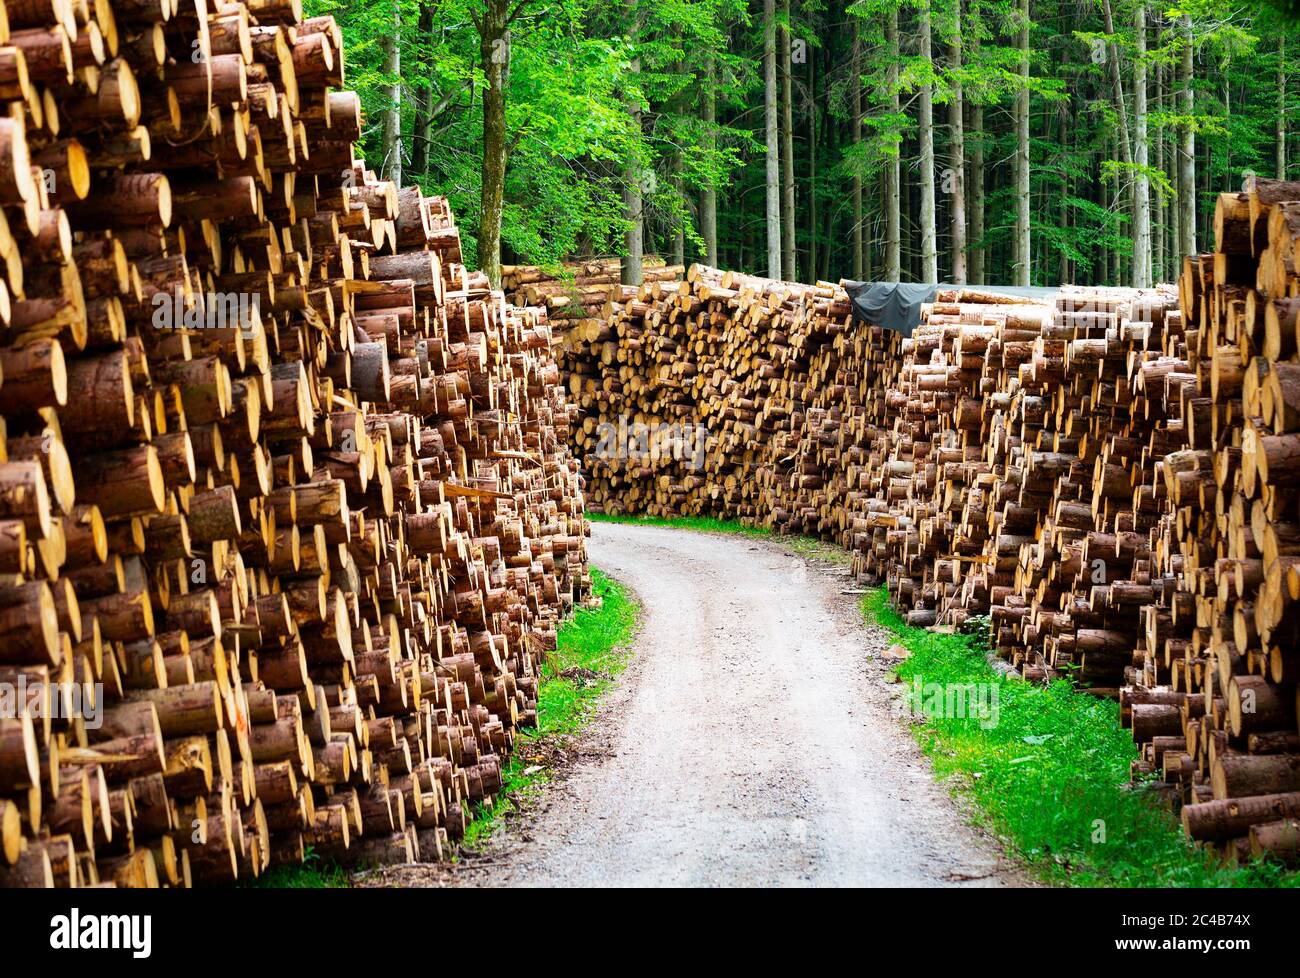 Grandi pali di legno lungo una strada forestale, ceppi in pila, Mondseeland, Salzkammergut, Austria superiore Foto Stock